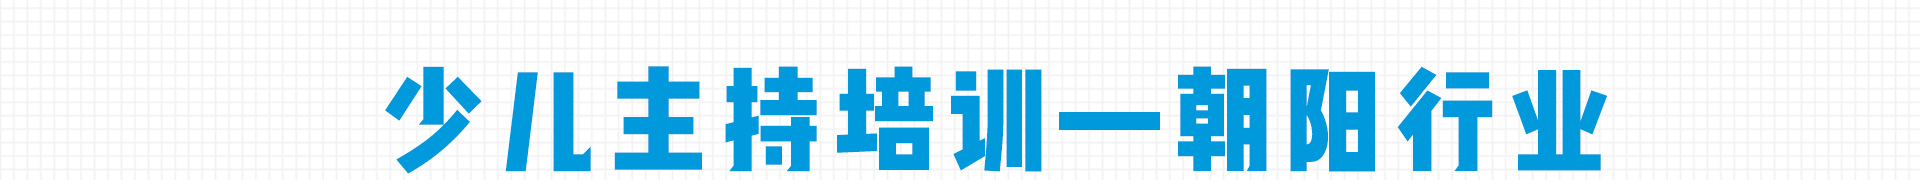 加盟网站zuizhong_10.jpg